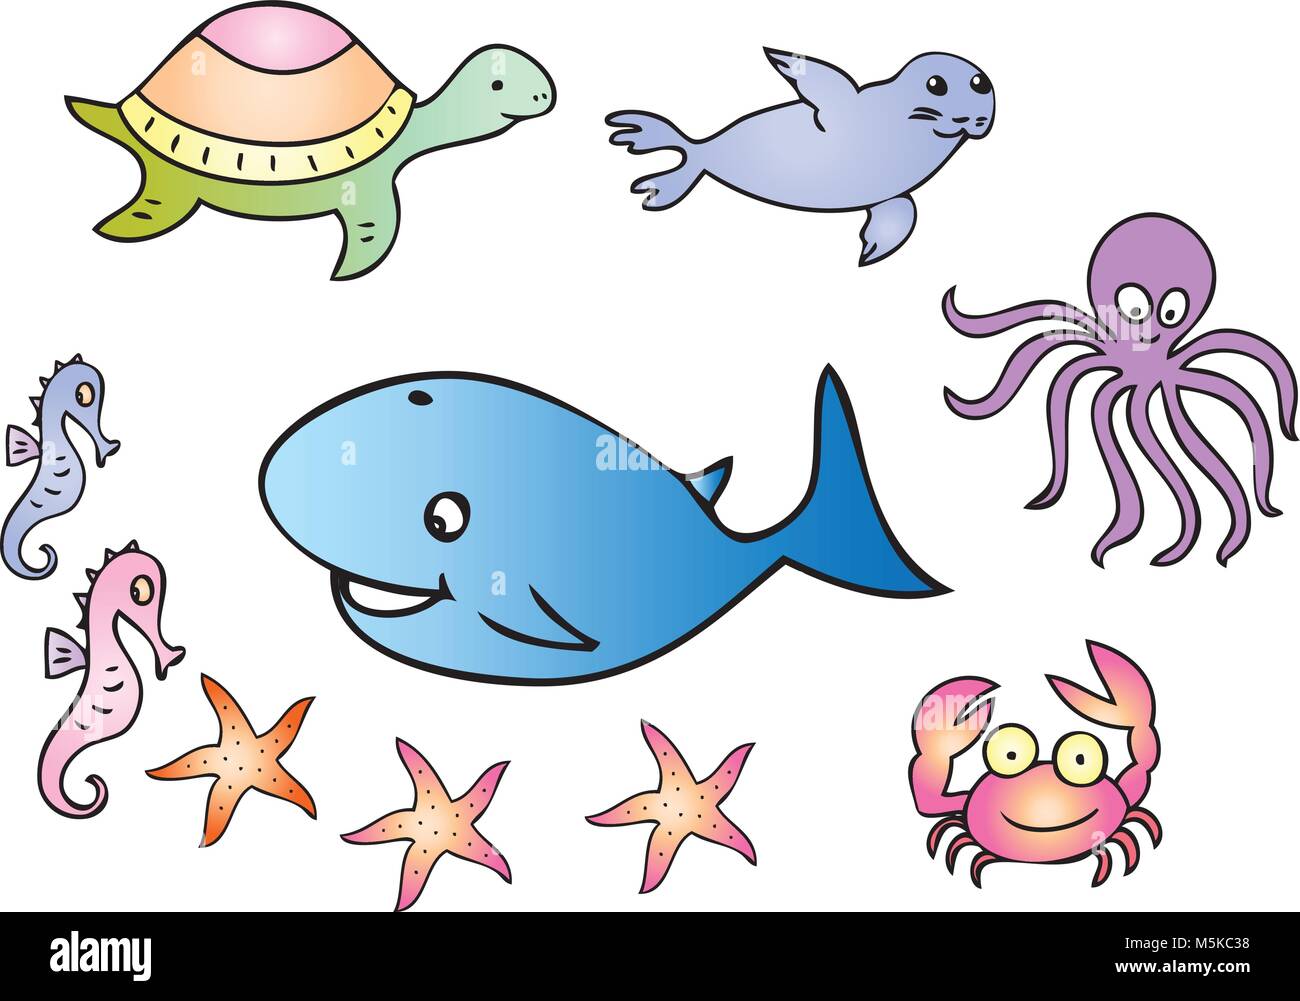 Ein Cartoon Illustration einiger Meeresbewohner einschließlich Seepferdchen, Wale, Schildkröten, Dichtung, Tintenfisch, Krabben und Seesterne. Stock Vektor